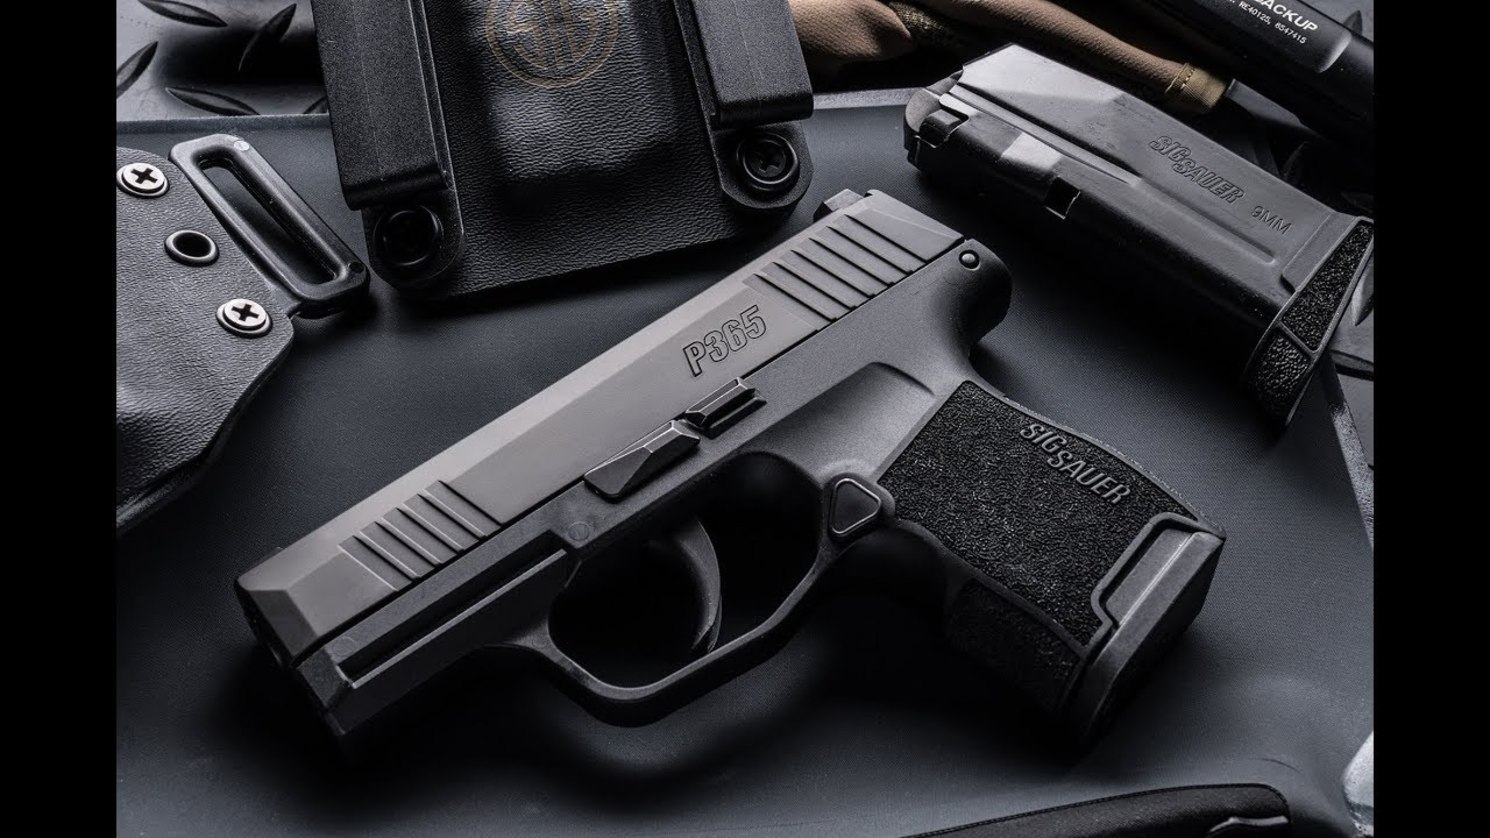 Sig Sauer P365xl Gun: Better Than A Glock? | The National Interest